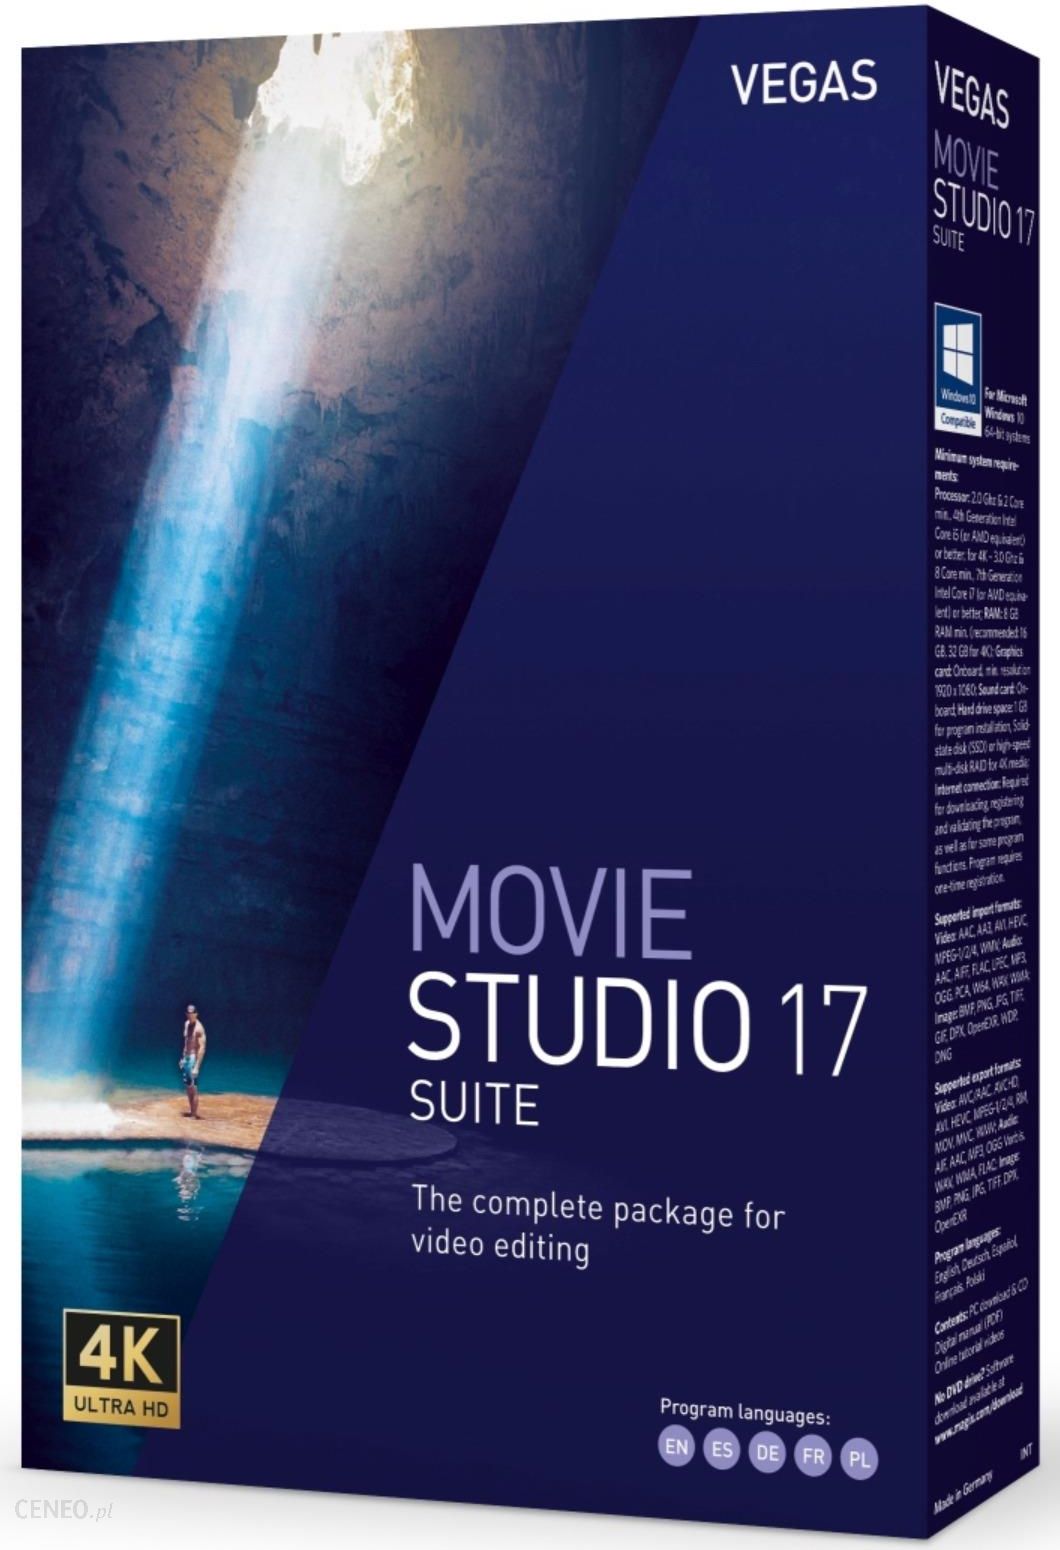 magix vegas movie studio 17 suite